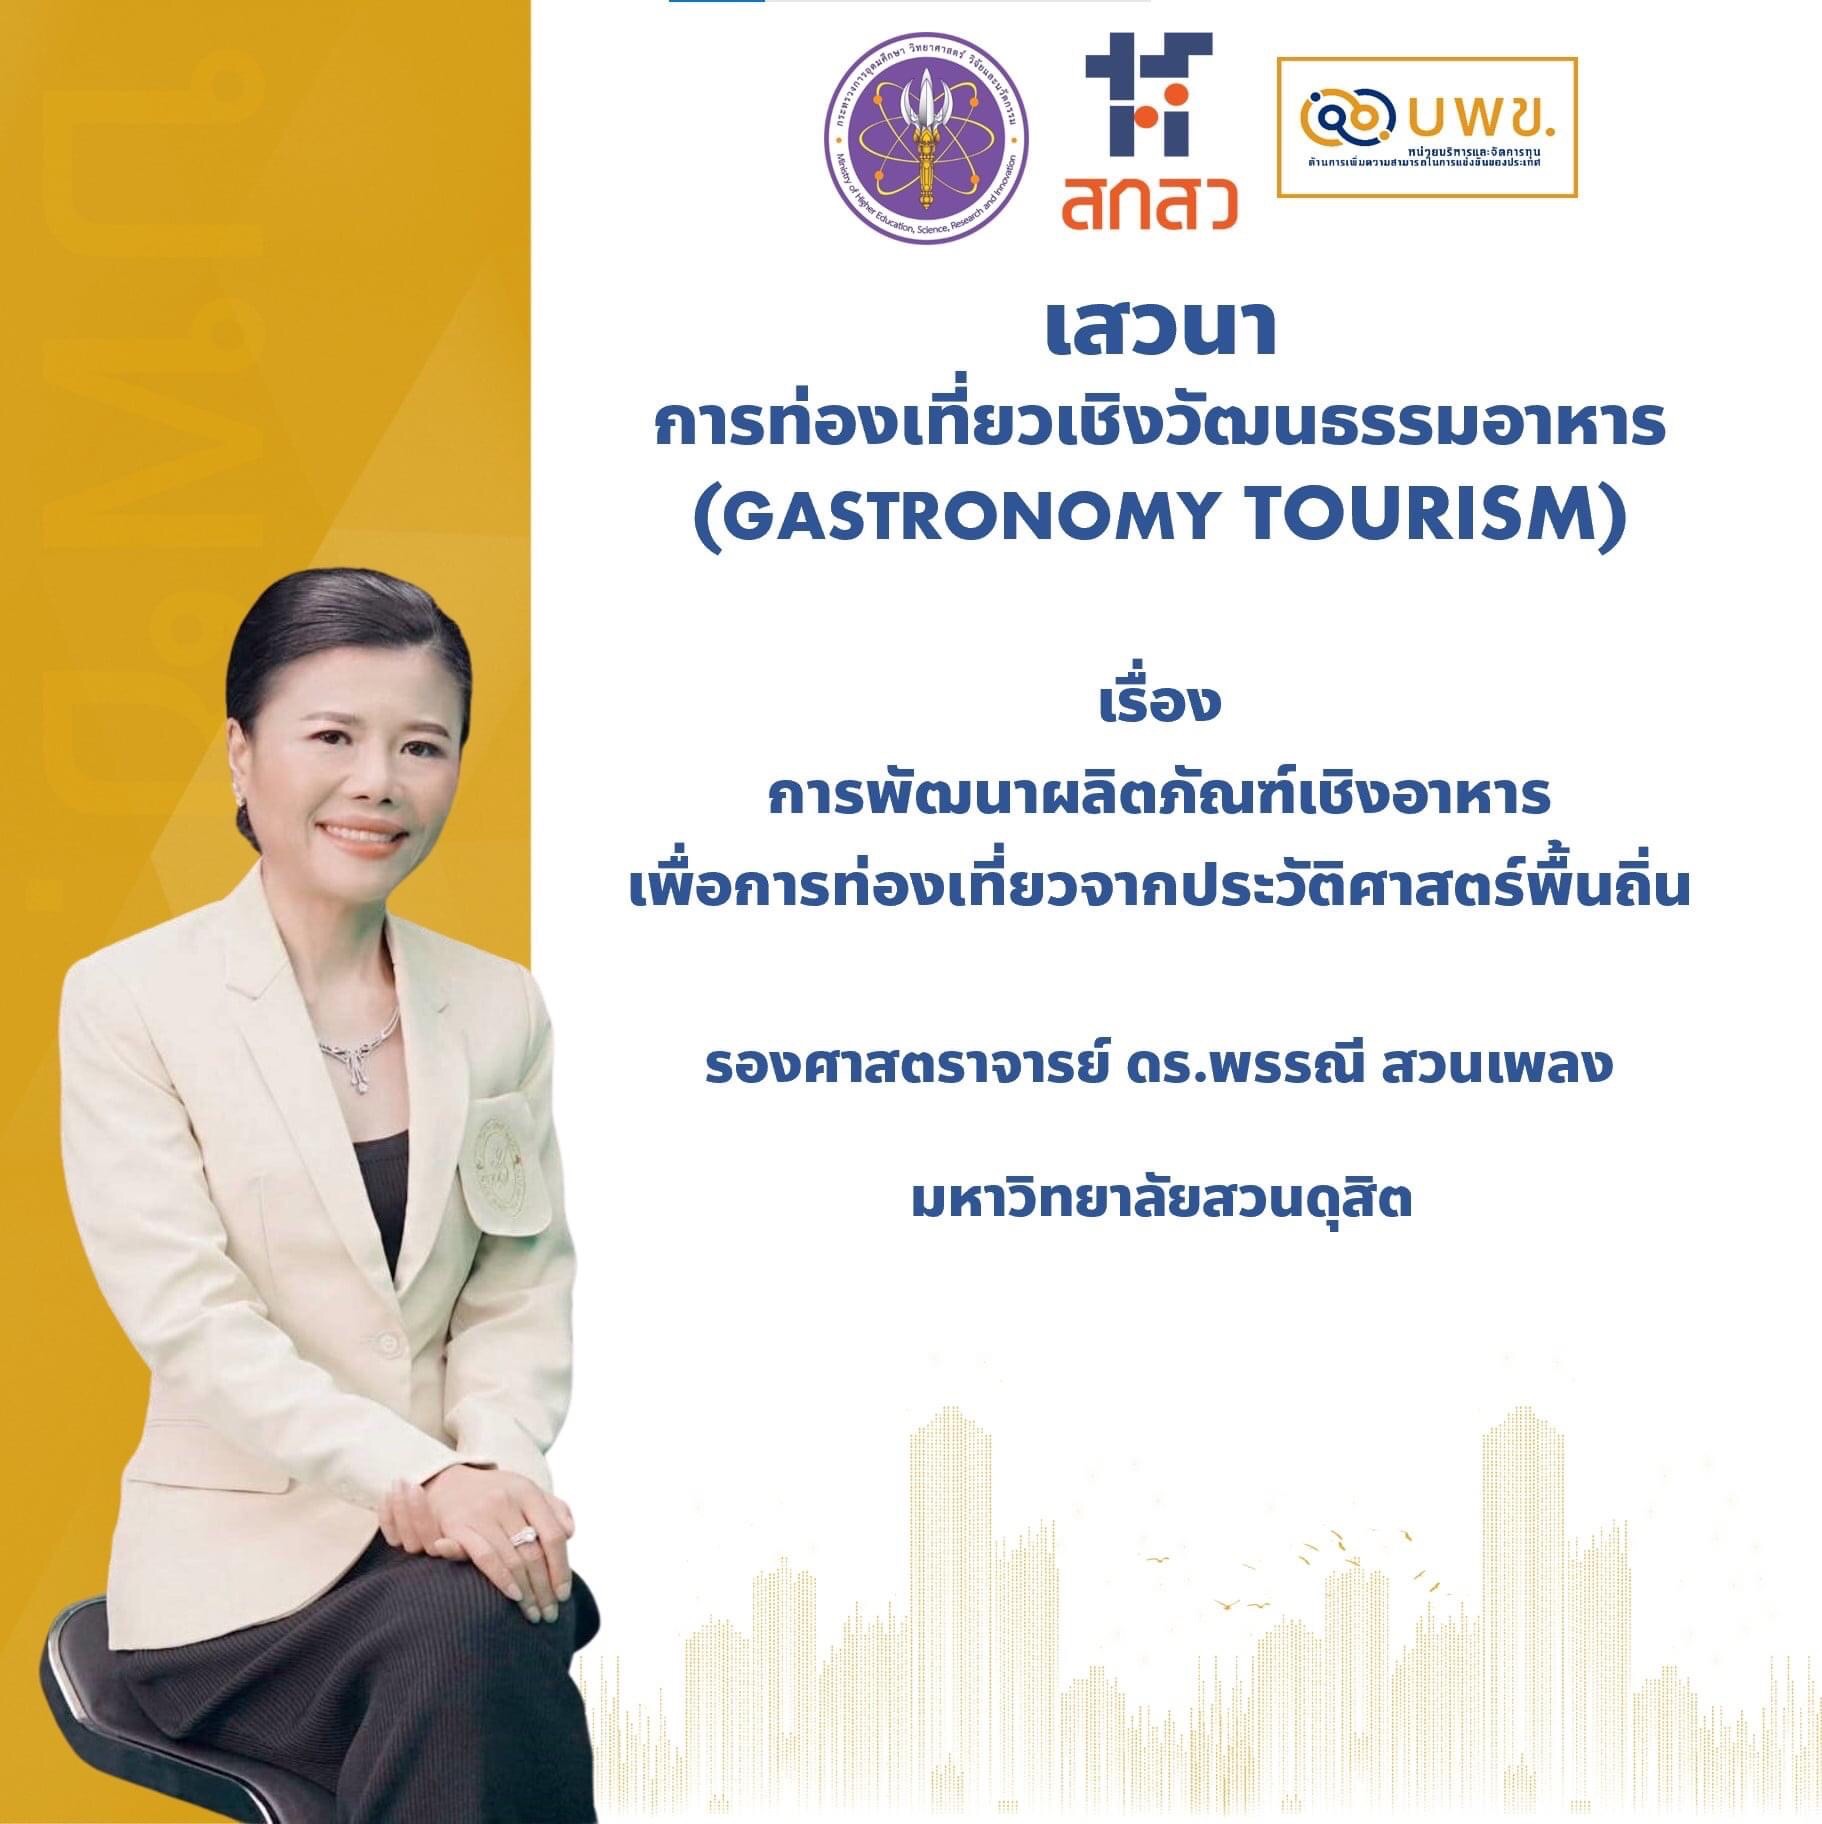 ขอเชิญ อาจารย์สถาบันอุดมศึกษาทั้งภาครัฐและเอกชน และผู้ที่สนใจทุกท่าน ร่วมฟังการเสวนา การท่องเที่ยวเชิงนวัตกรรมอาหาร (Gastronomy Tourism) ในงานมหกรรมงานวิจัยแห่งชาติ (Thailand Research Expo 2021)